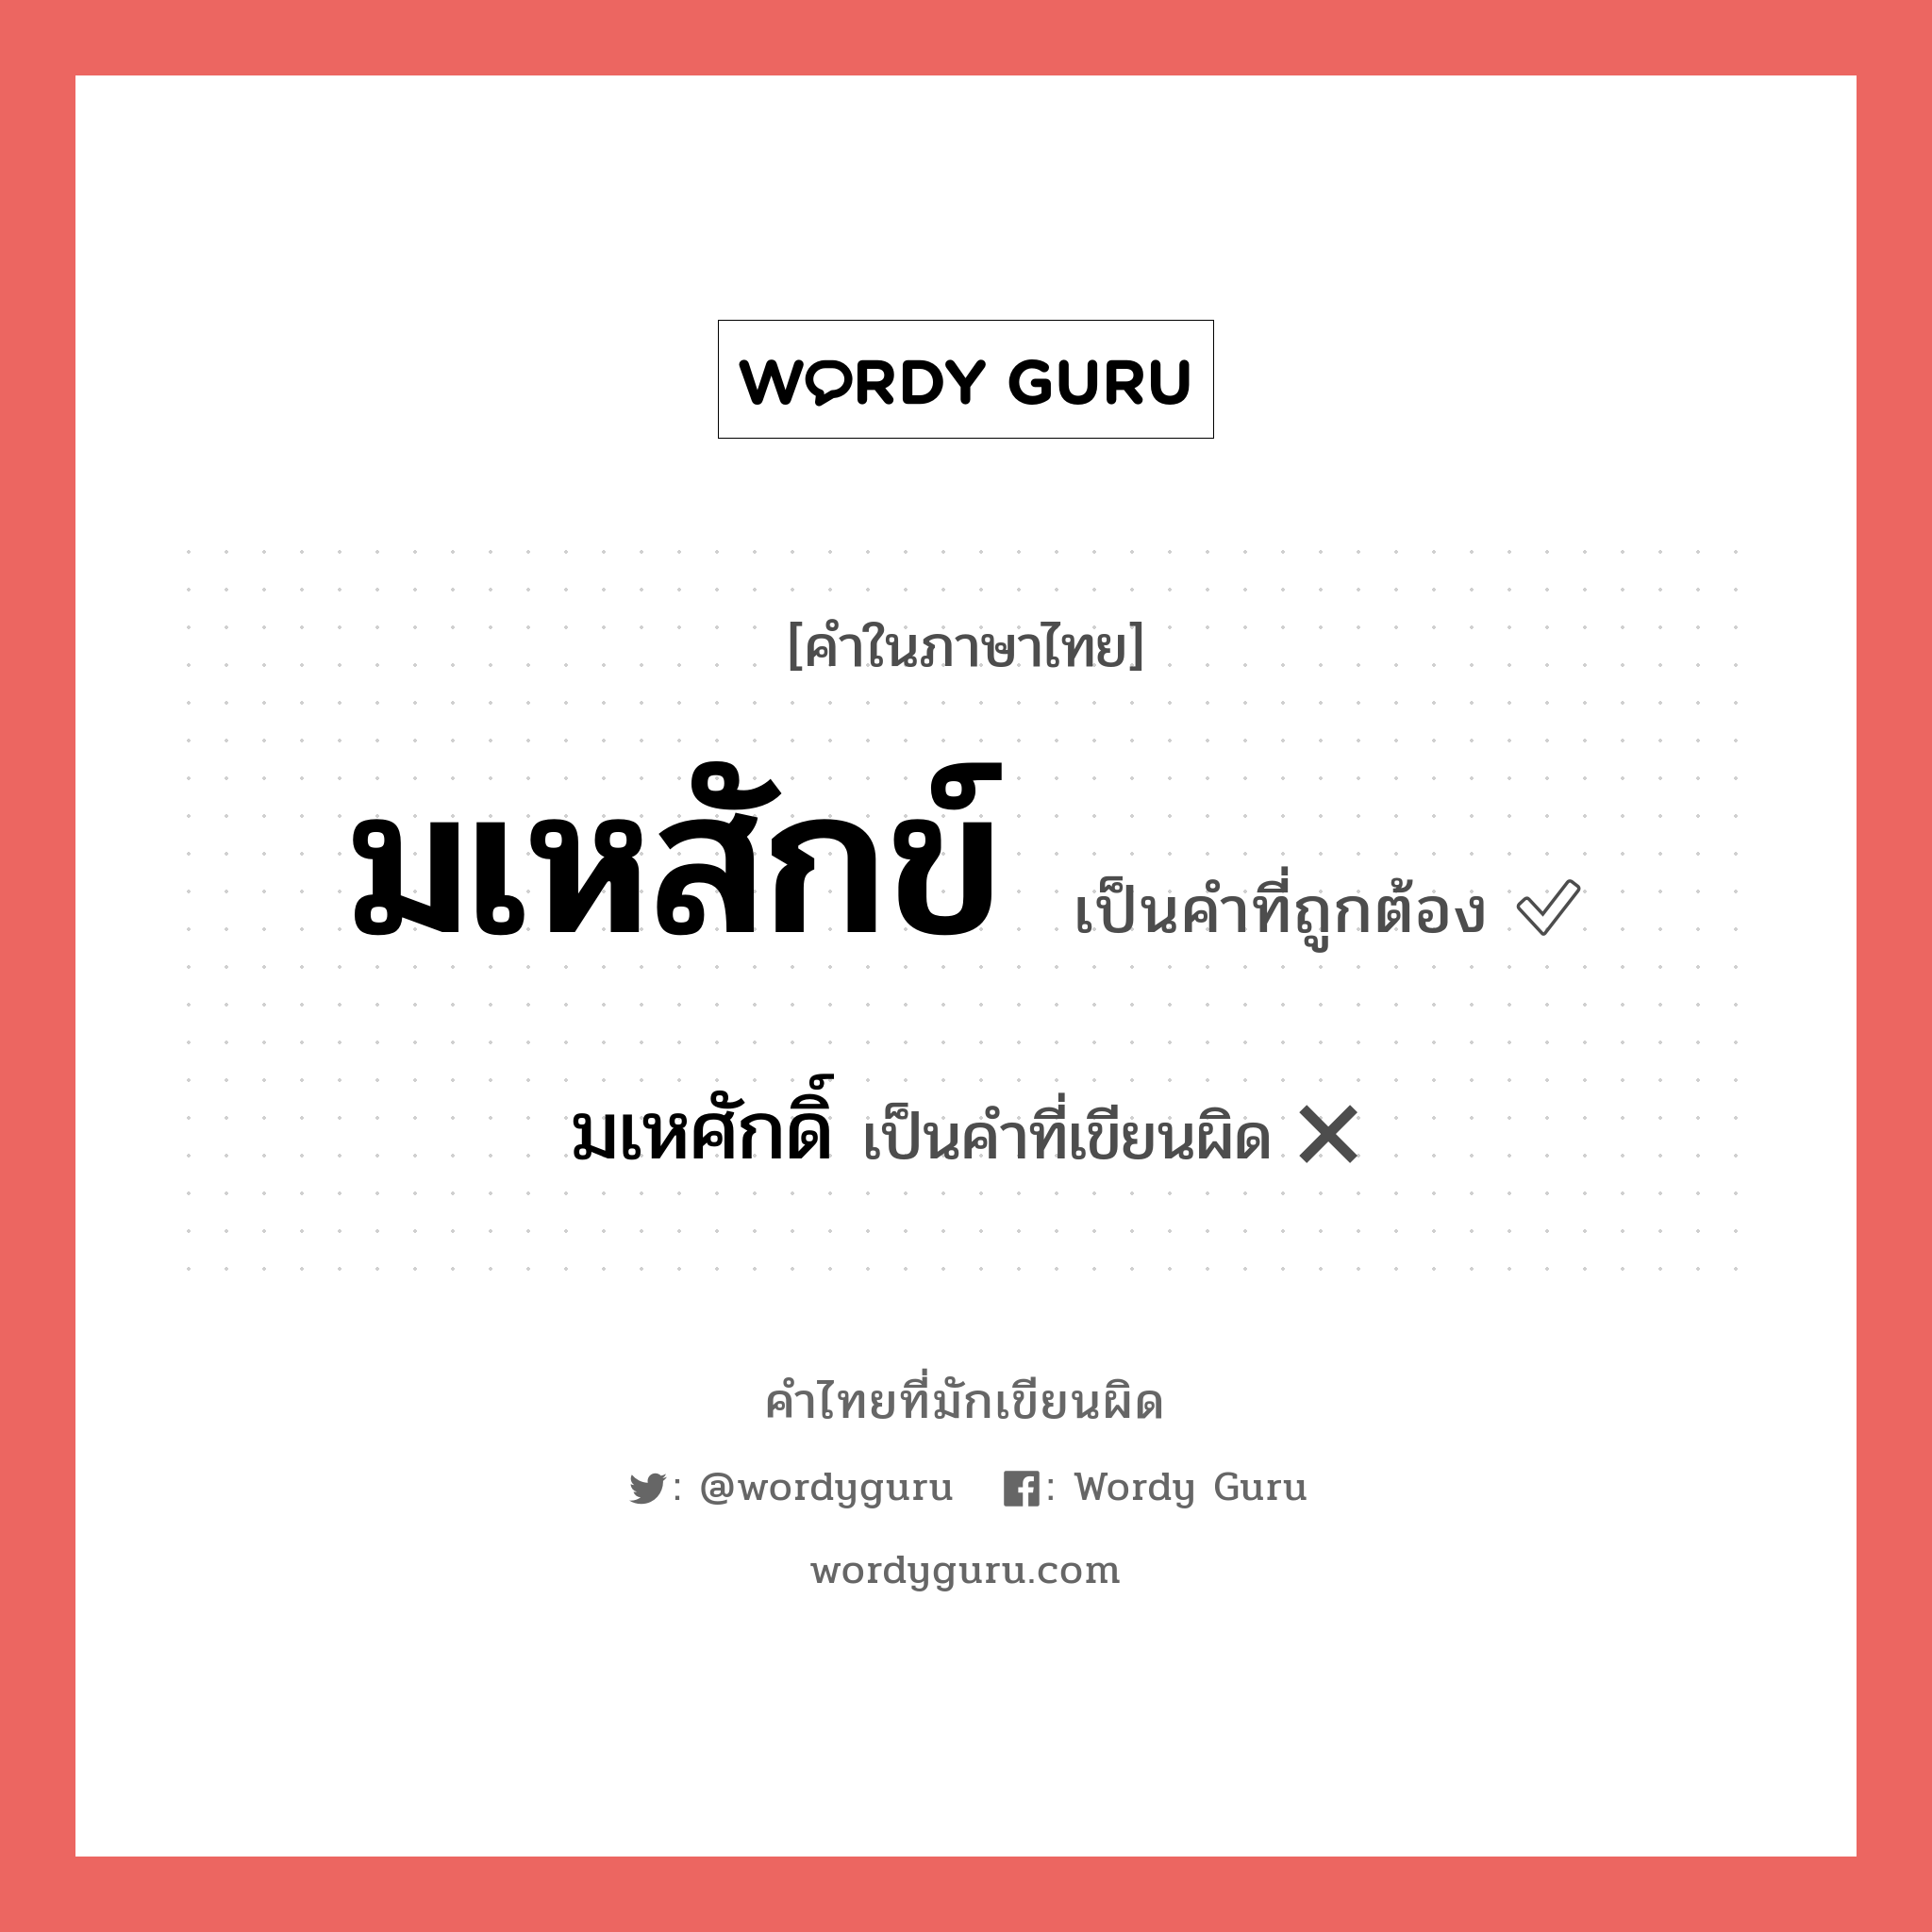 มเหศักดิ์ หรือ มเหสักข์ คำไหนเขียนถูก?, คำในภาษาไทยที่มักเขียนผิด มเหศักดิ์ คำที่ผิด ❌ มเหสักข์